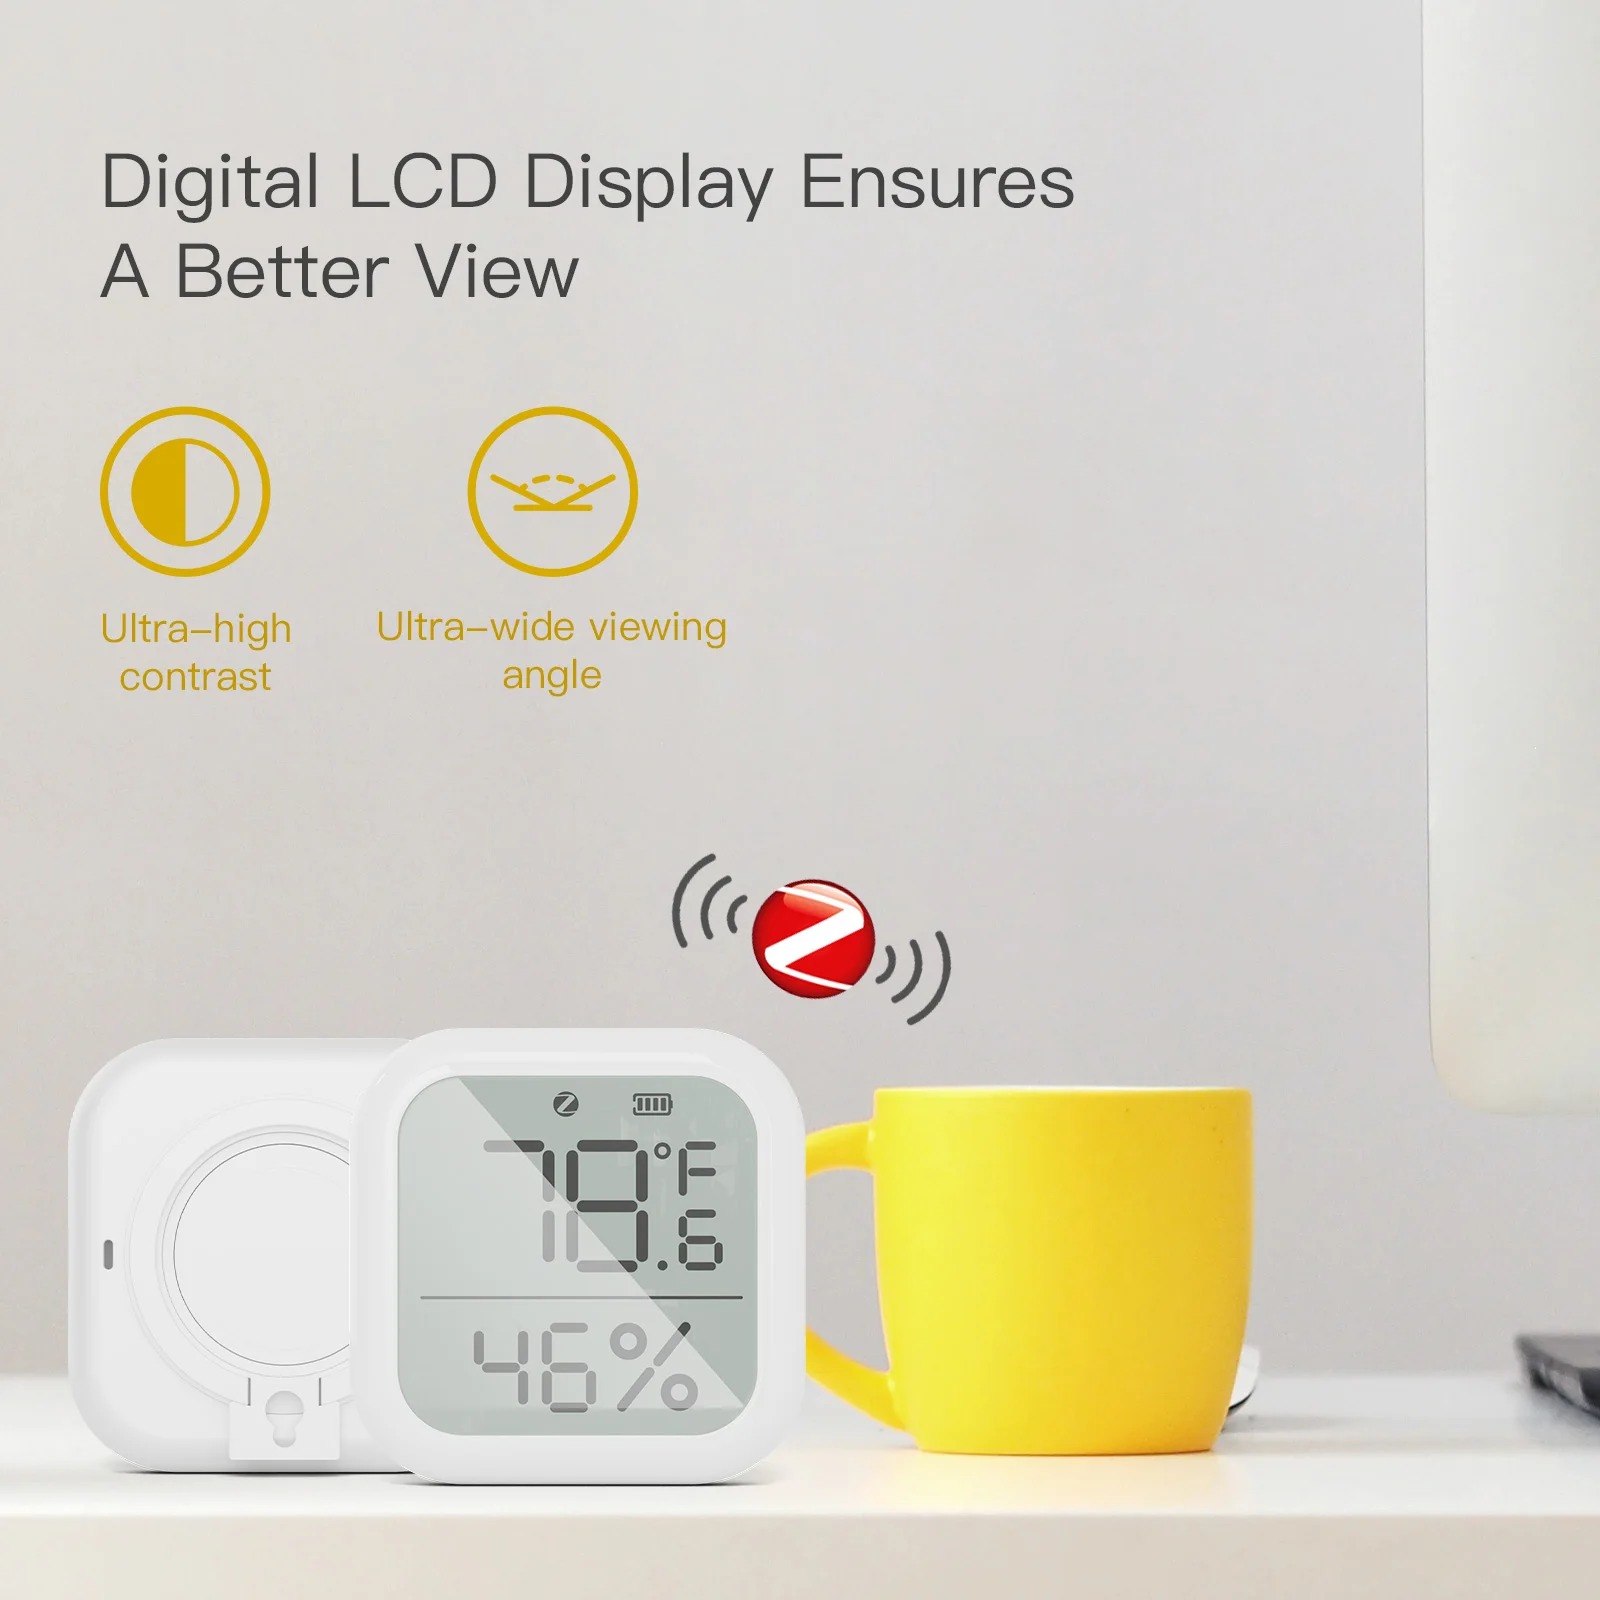 MOES Tuya ZigBee Akıllı Ev Sıcaklık Ve Nem Sensörü İle LED Ekran İle Çalışır Google Asistan ve Tuya Akıllı APP